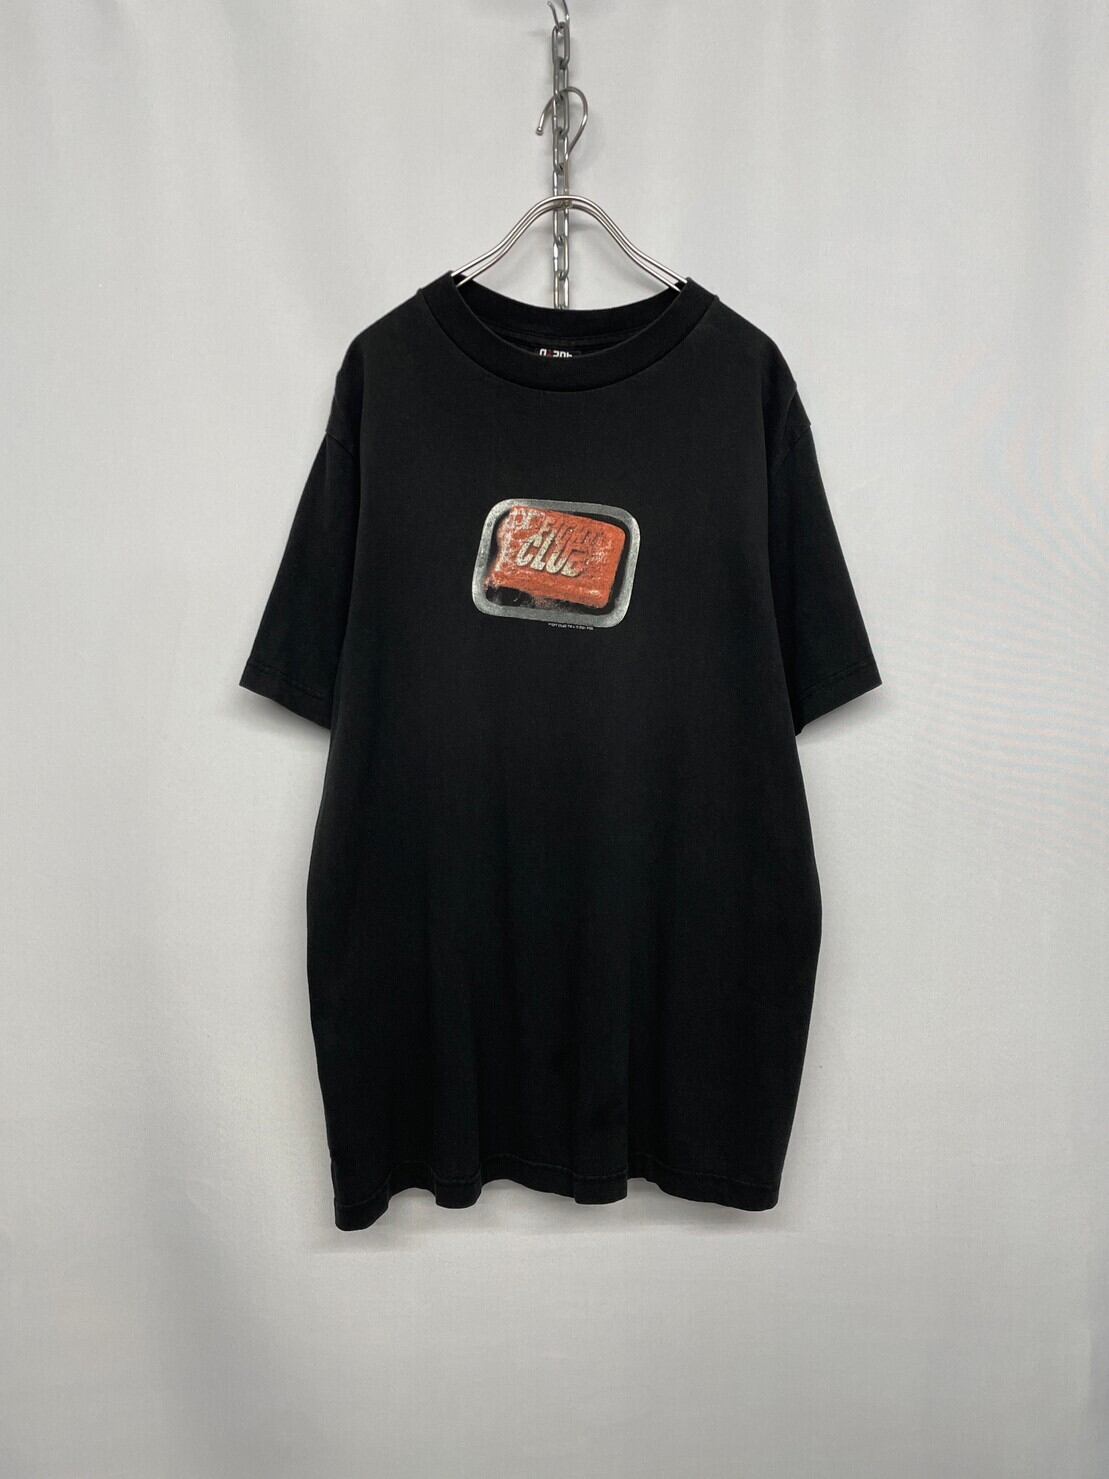 2001 Fight Club Tシャツ ファイトクラブ ブラッドピット XL - Tシャツ